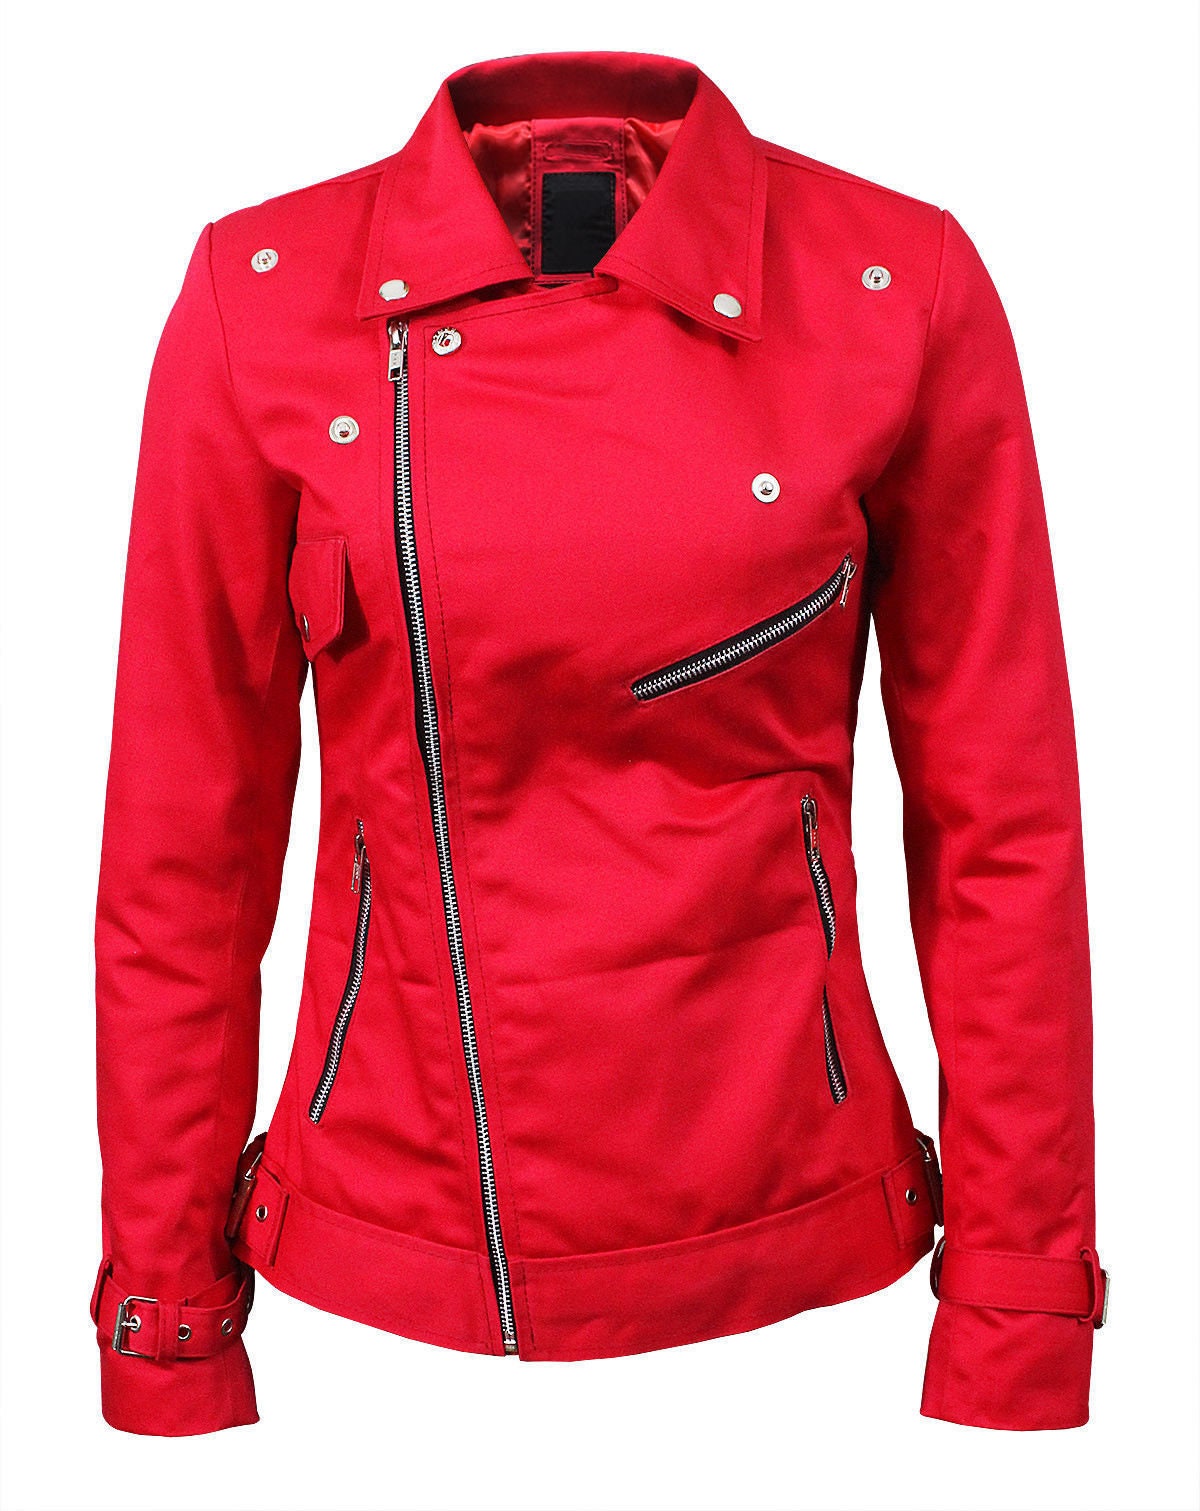 Women's Stylish Red Cotton Snake Logo Motorcycle Jacket - Etsy